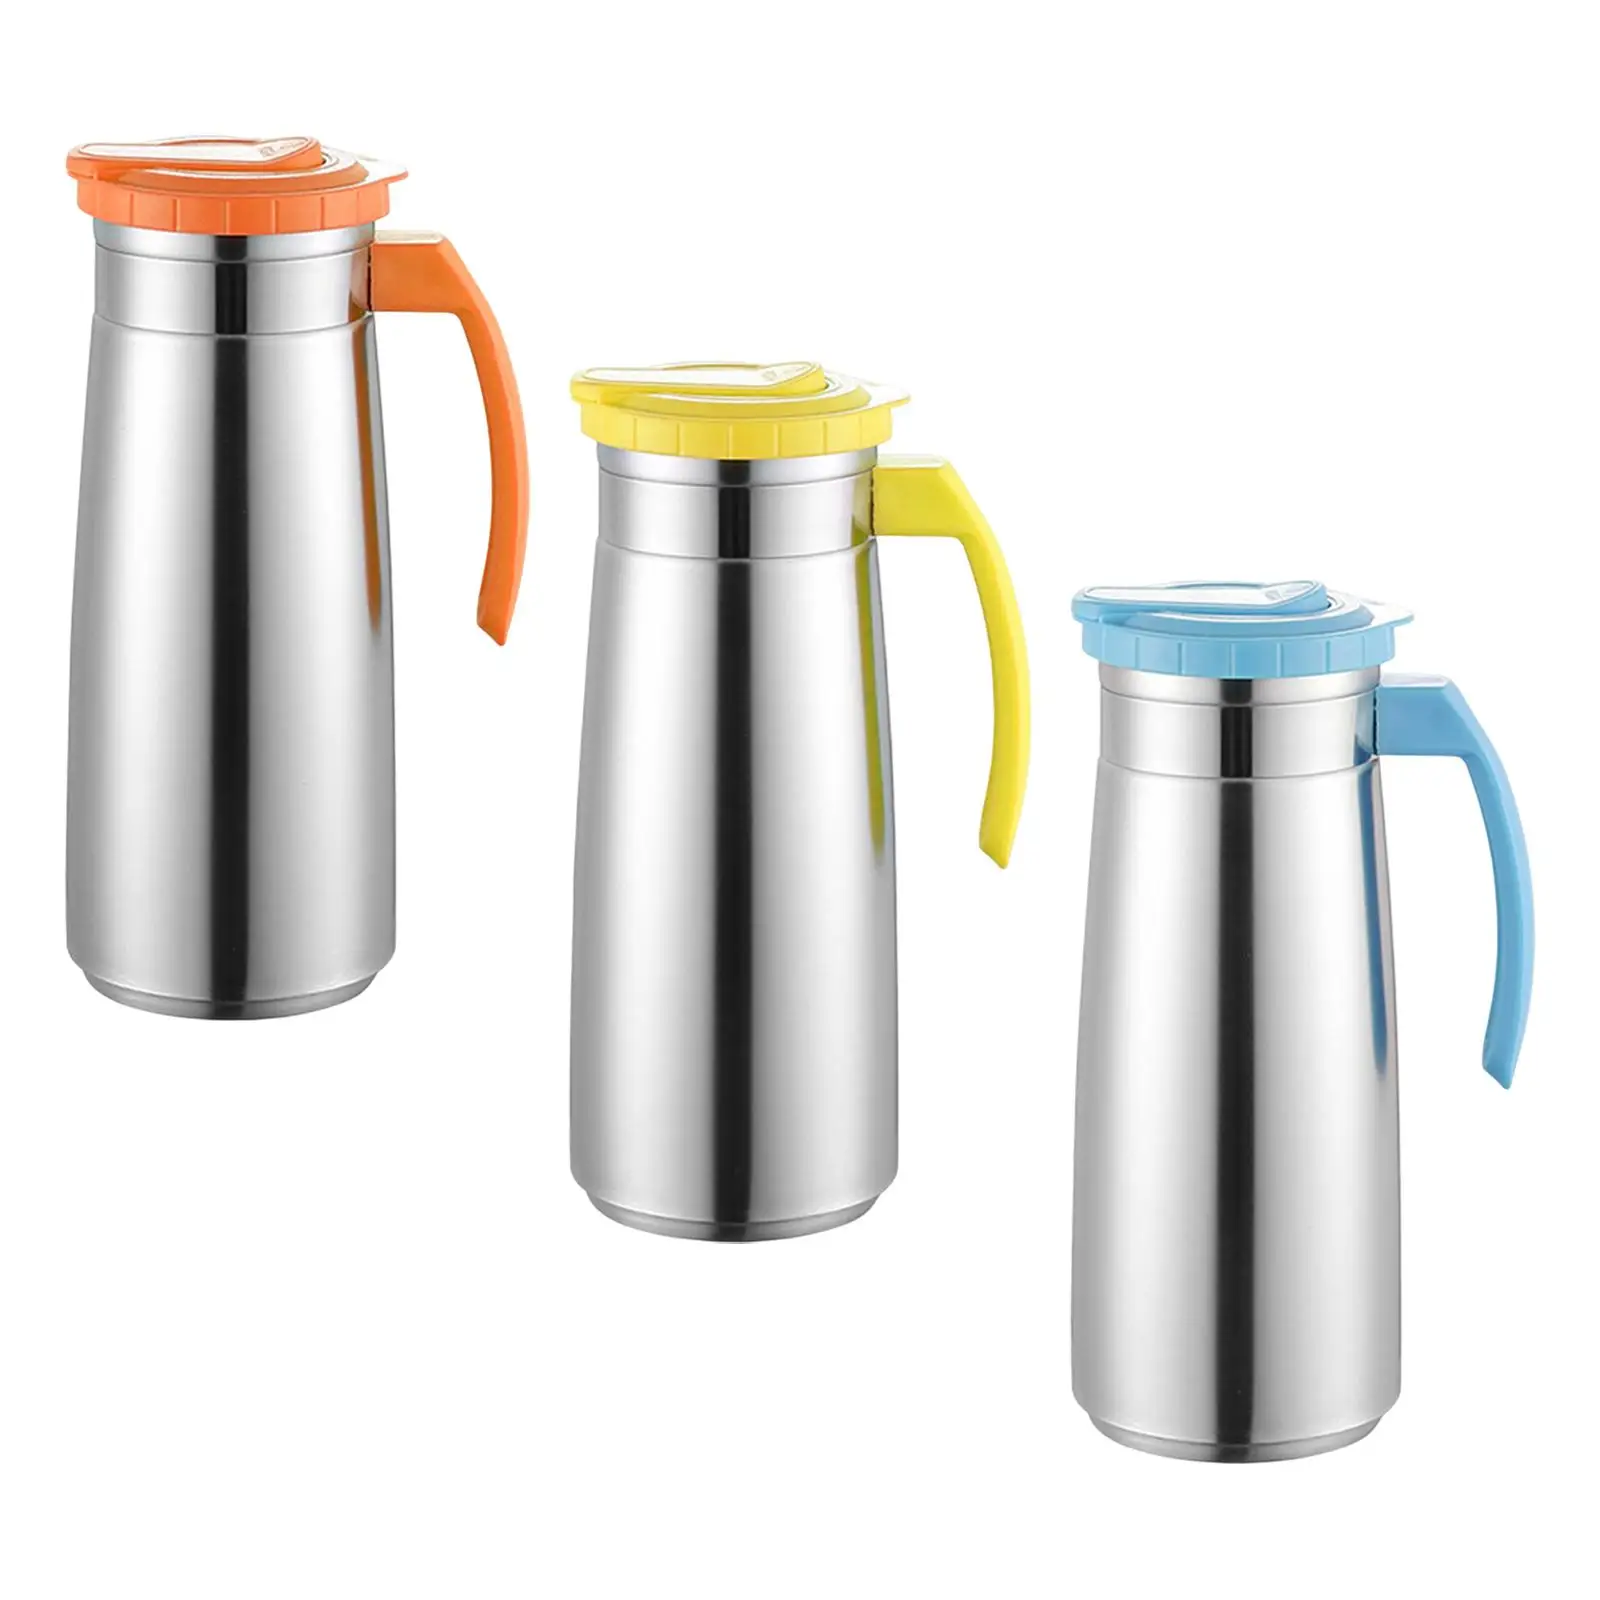 Stainless Steel Jug High Temperature Resistant Beverage Jar Water Jug Large Capacity Water Bottle for Tea Beverage Milk